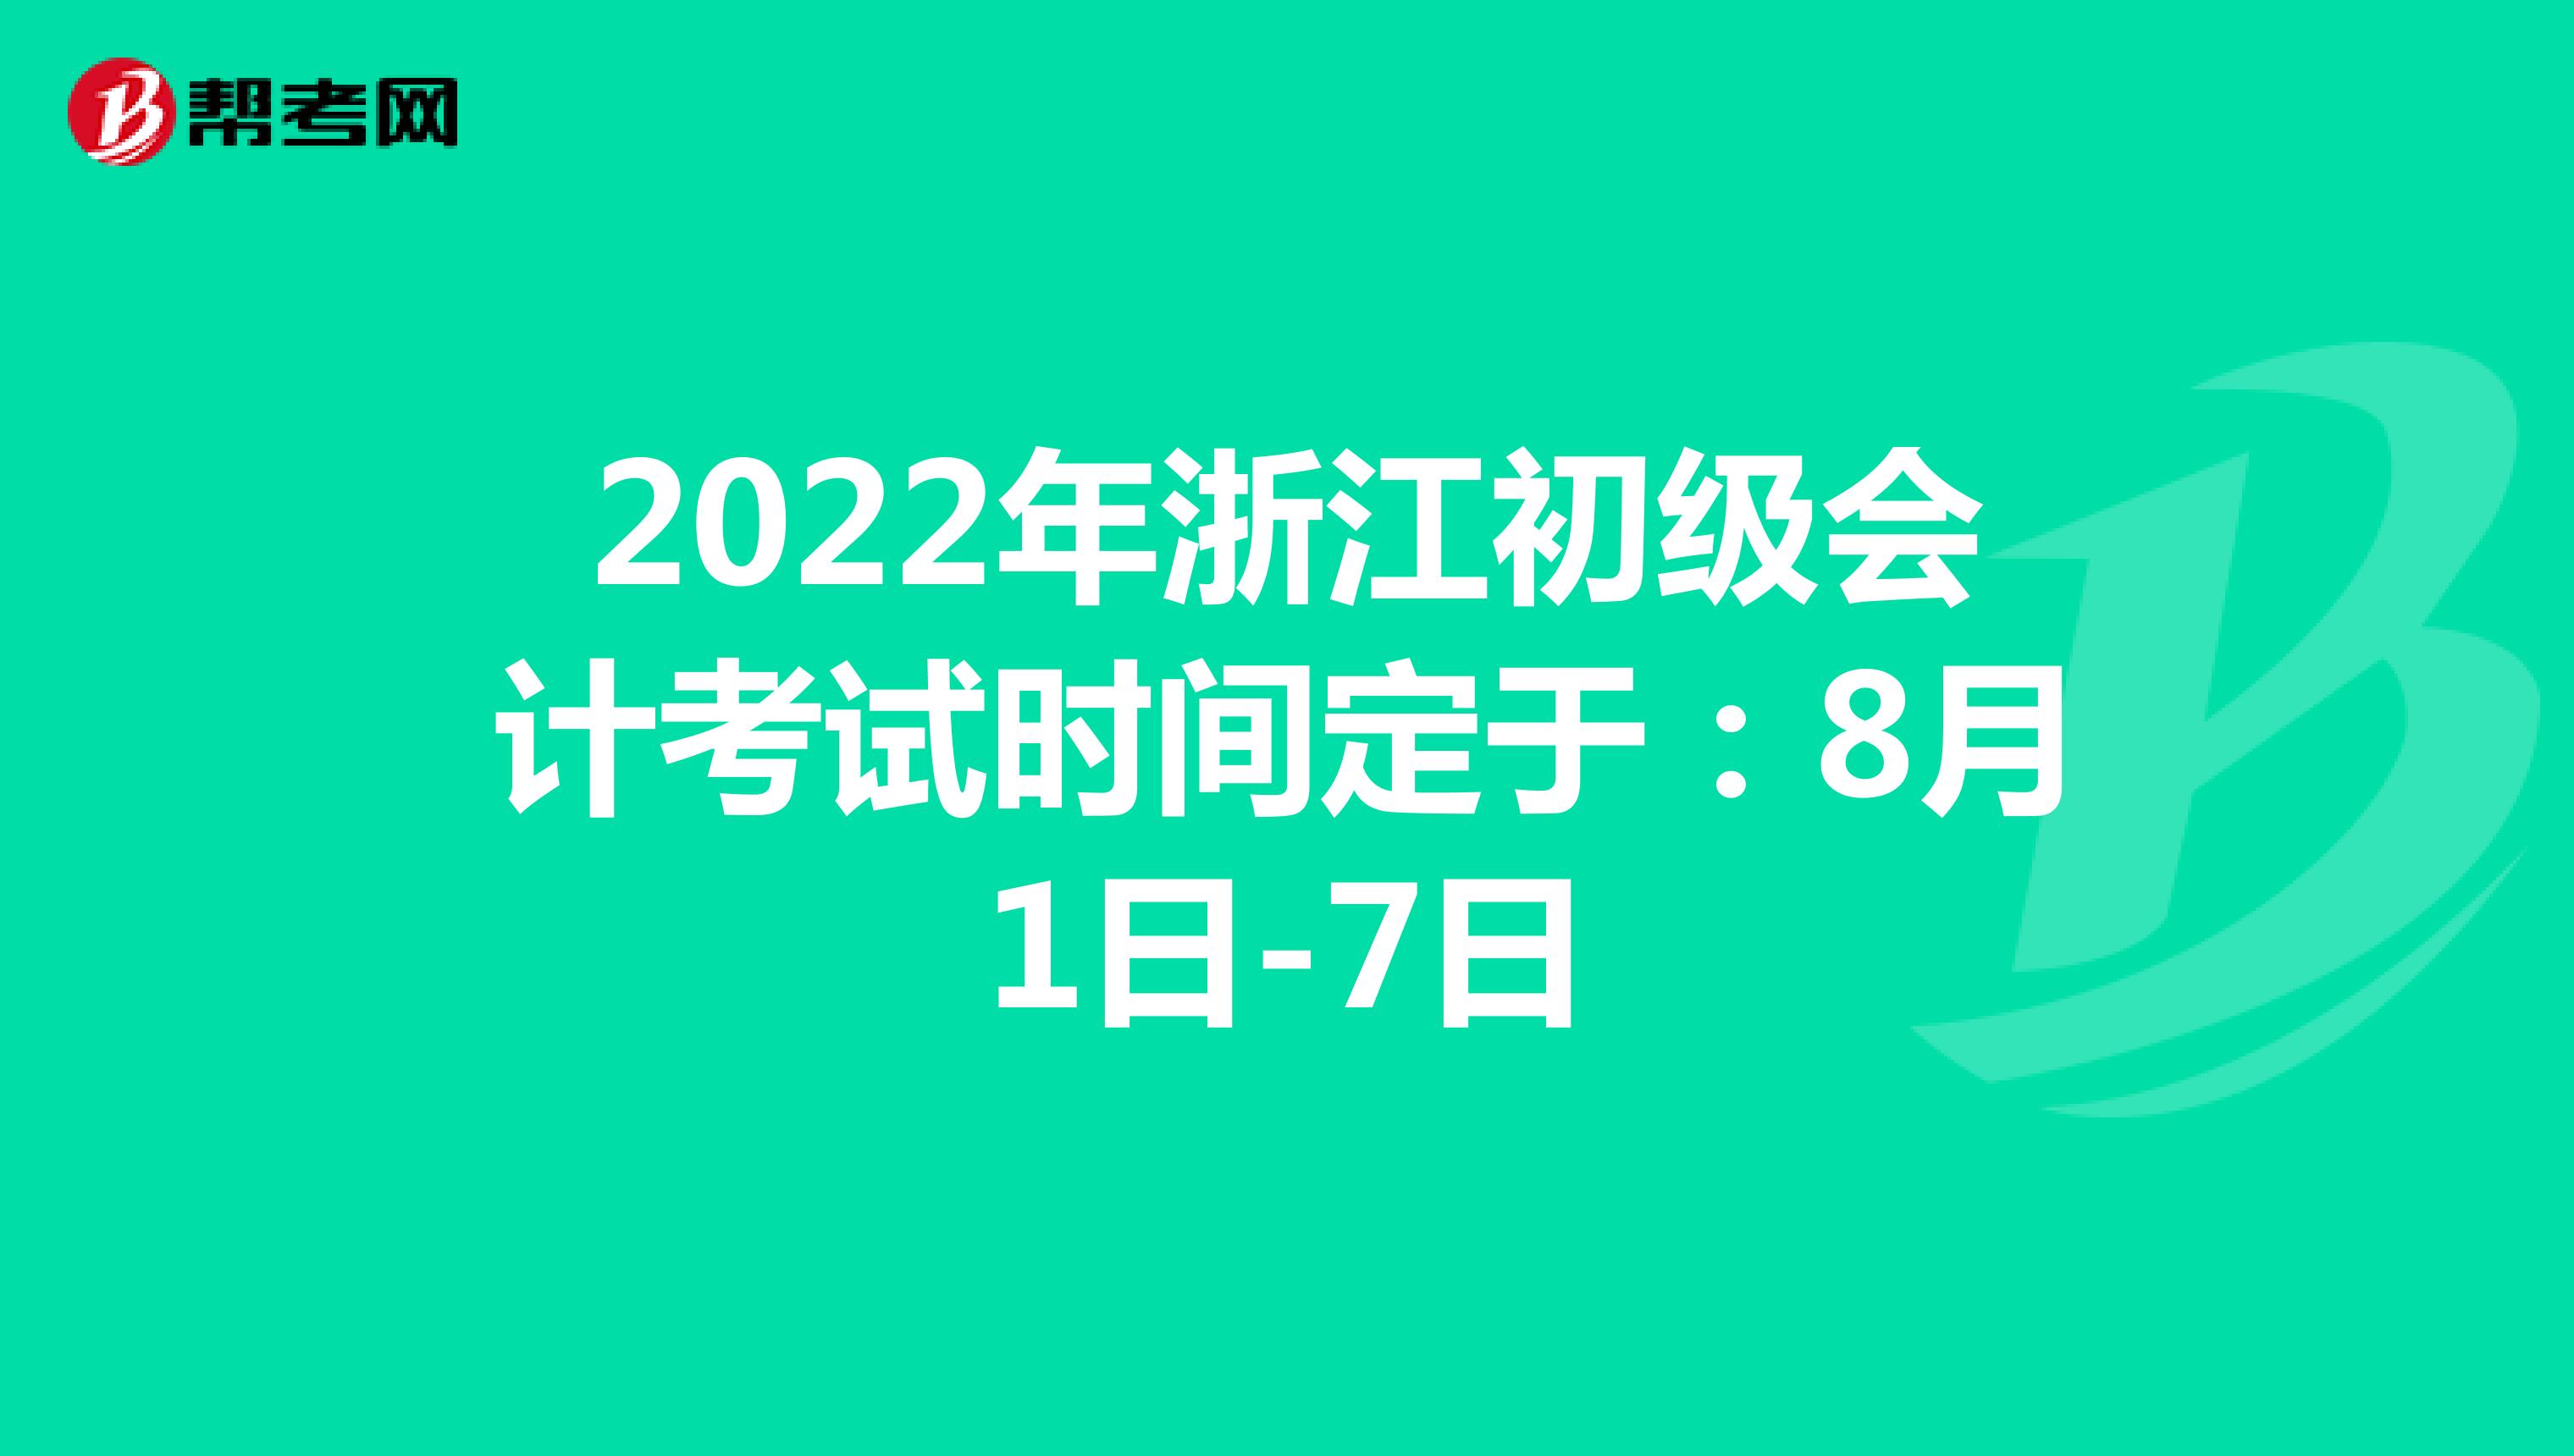 2022年浙江初级会计考试时间定于：8月1日-7日